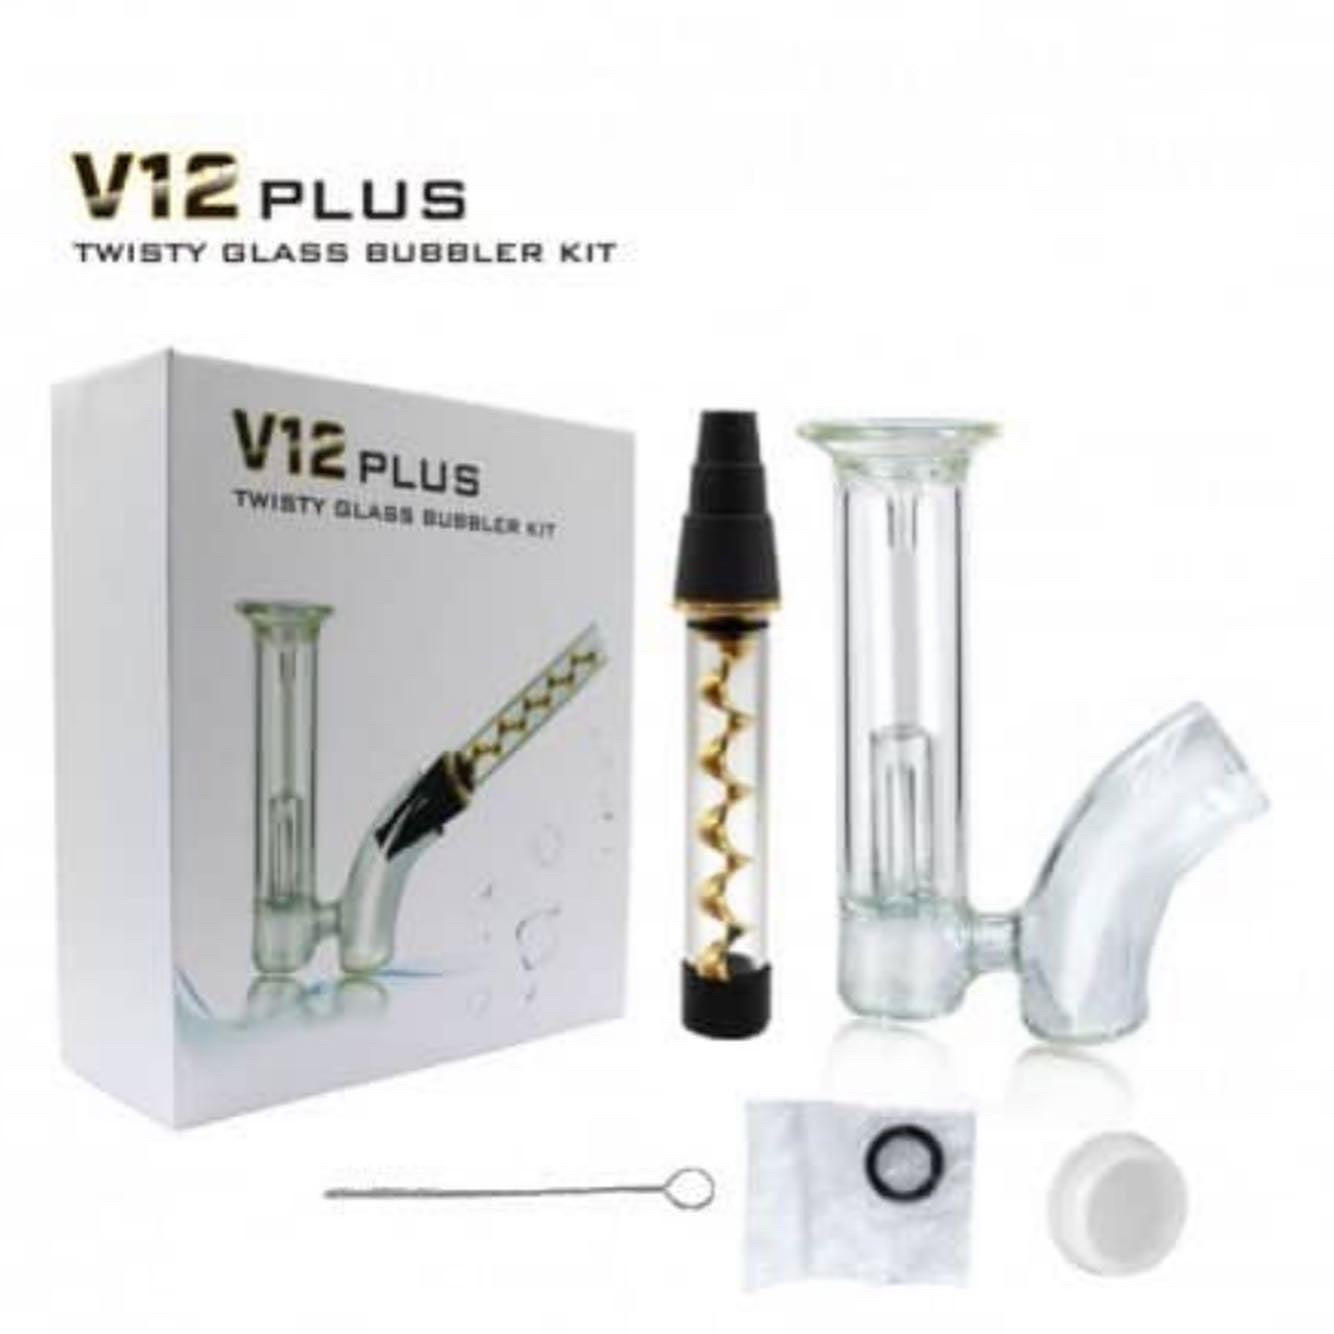 V12 Glass Blunt Bubbler Kit